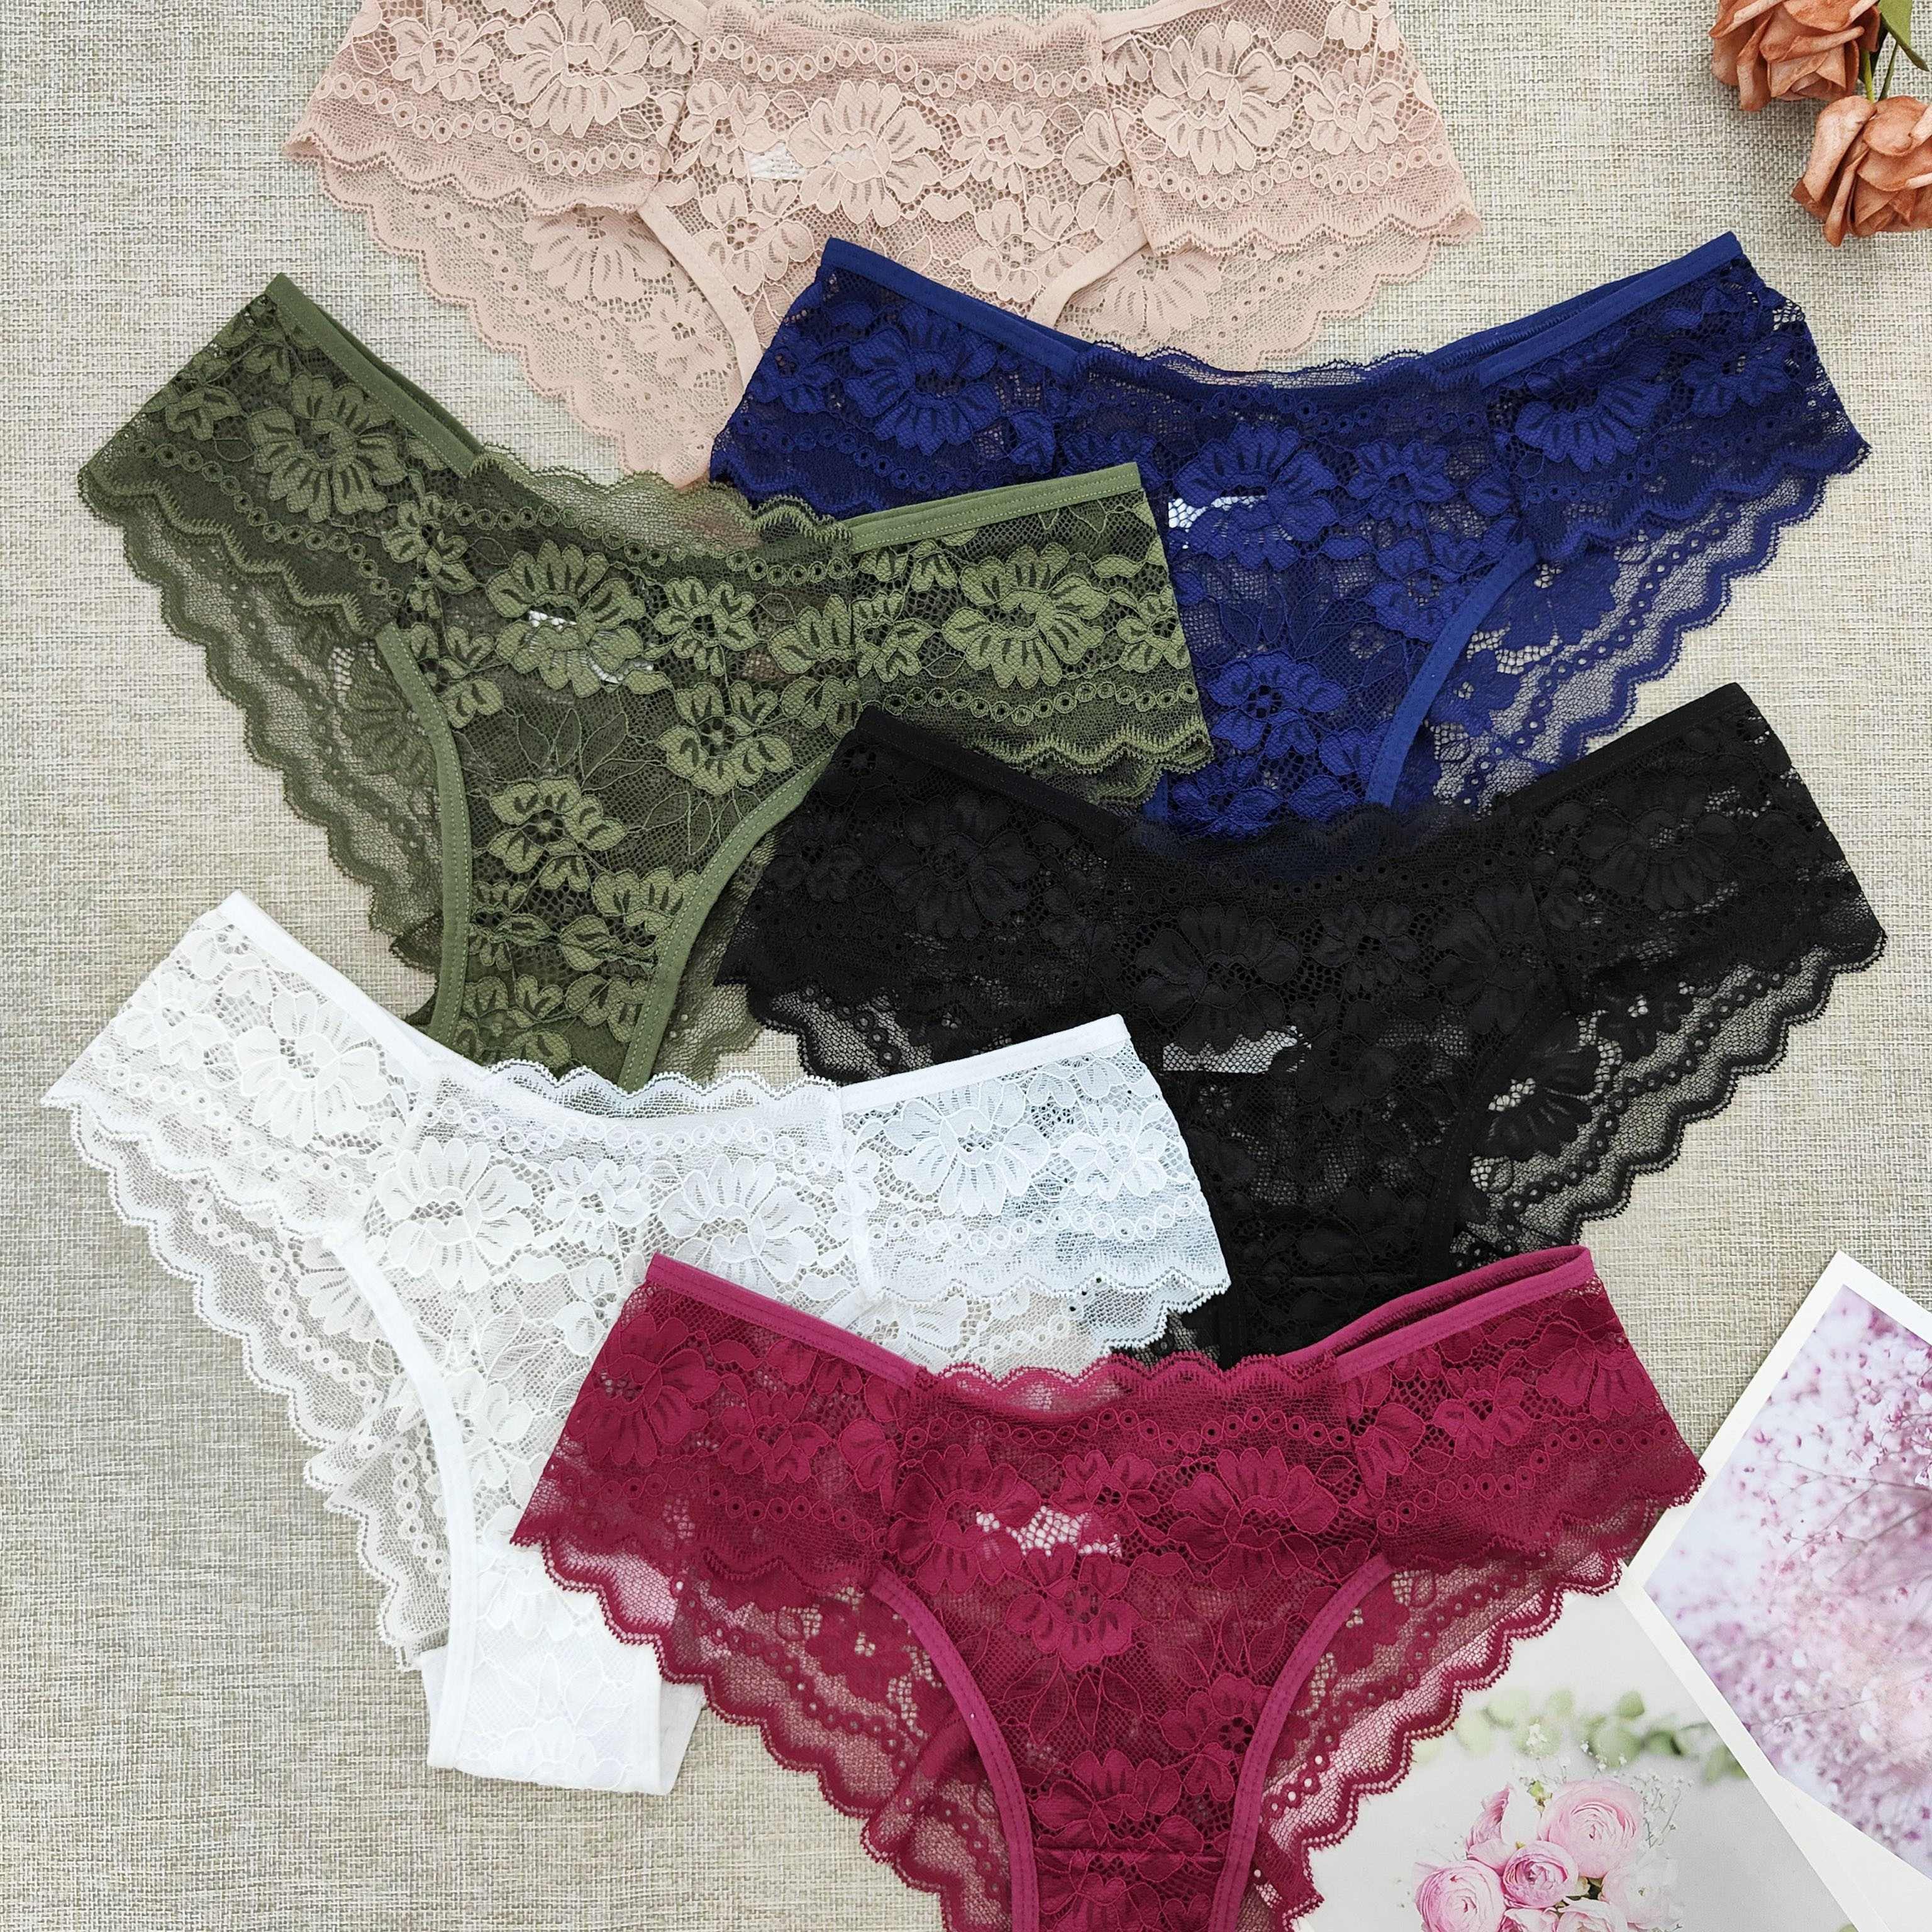 

6pcs Floral Lace Briefs, Comfy & Breathable Scallop Trim Panties, Women's Lingerie & Underwear